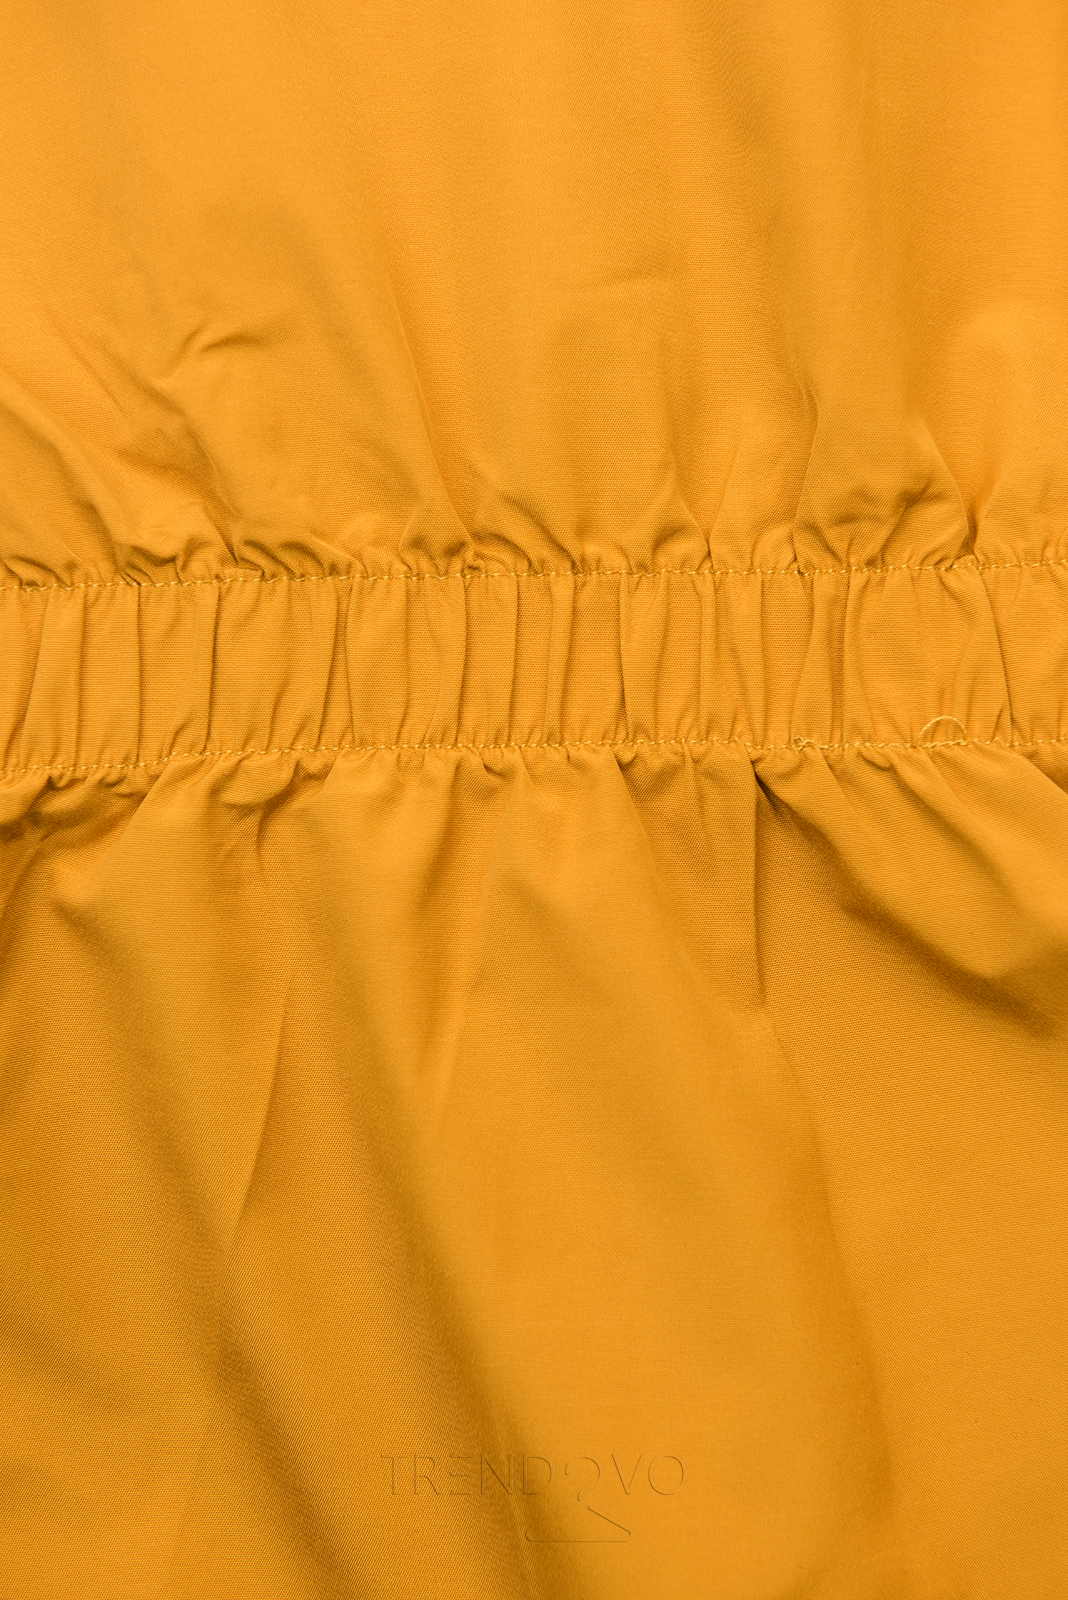 Žltá obojstranná bunda s pepito vzorom